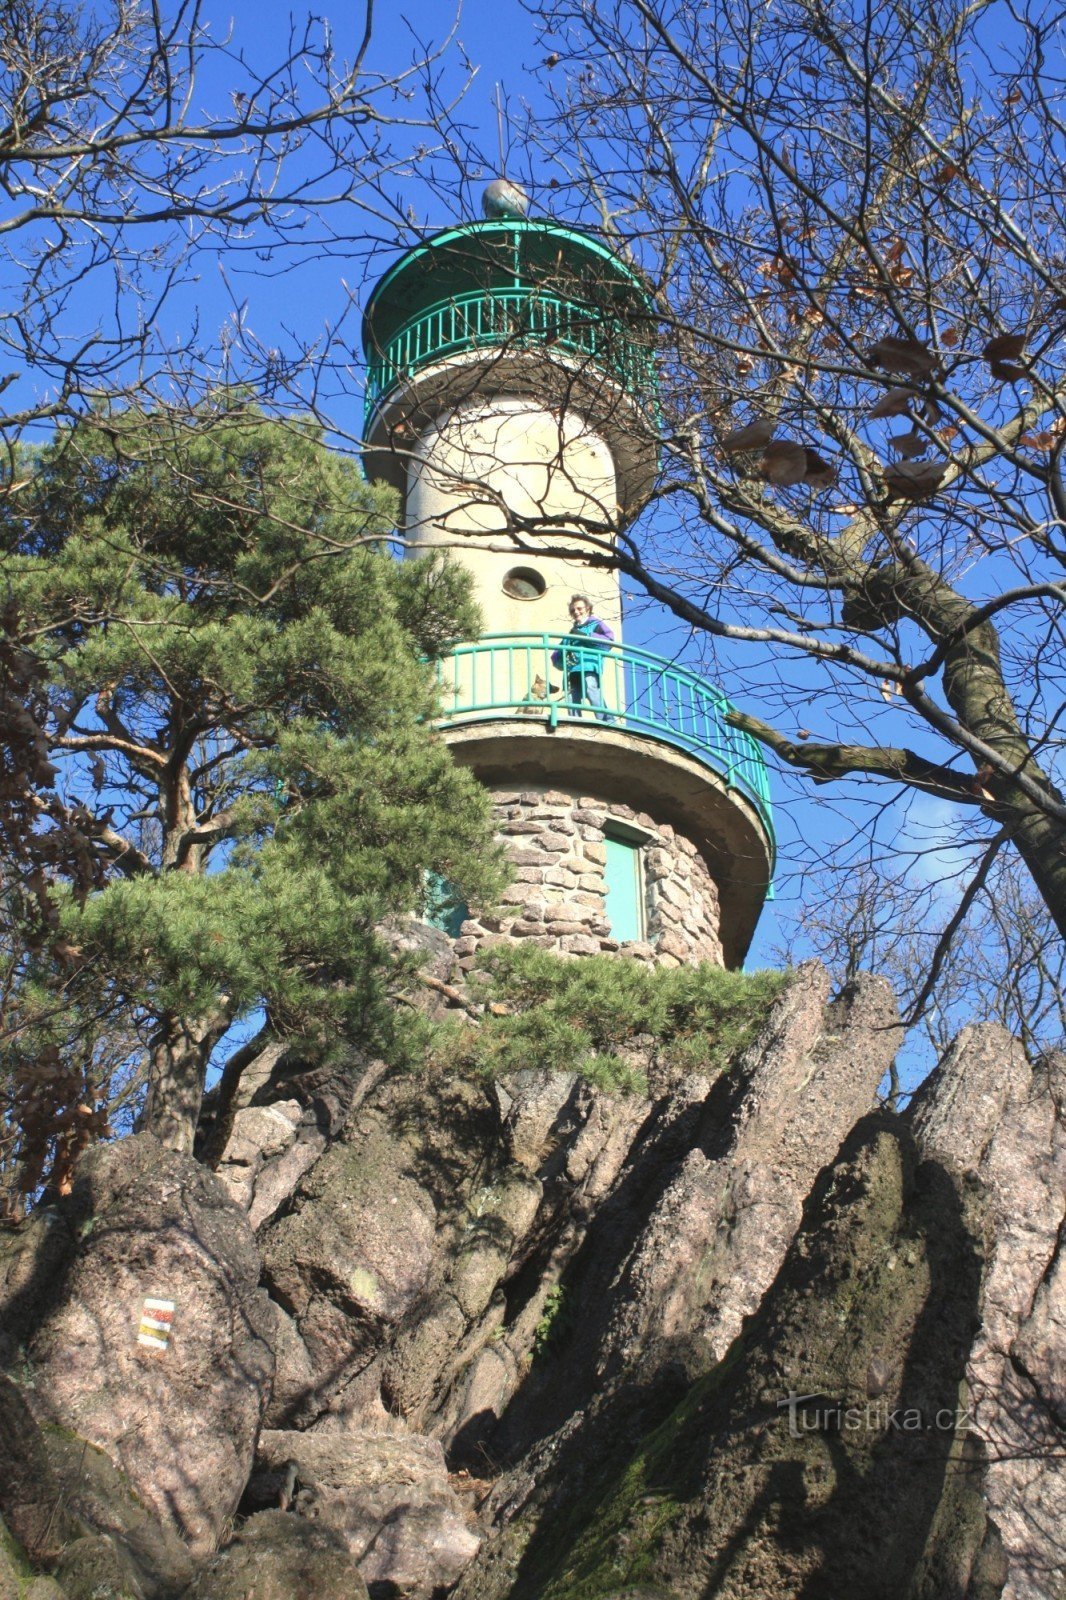 Udsigtstårnet er placeret på en klippefyldt højderyg